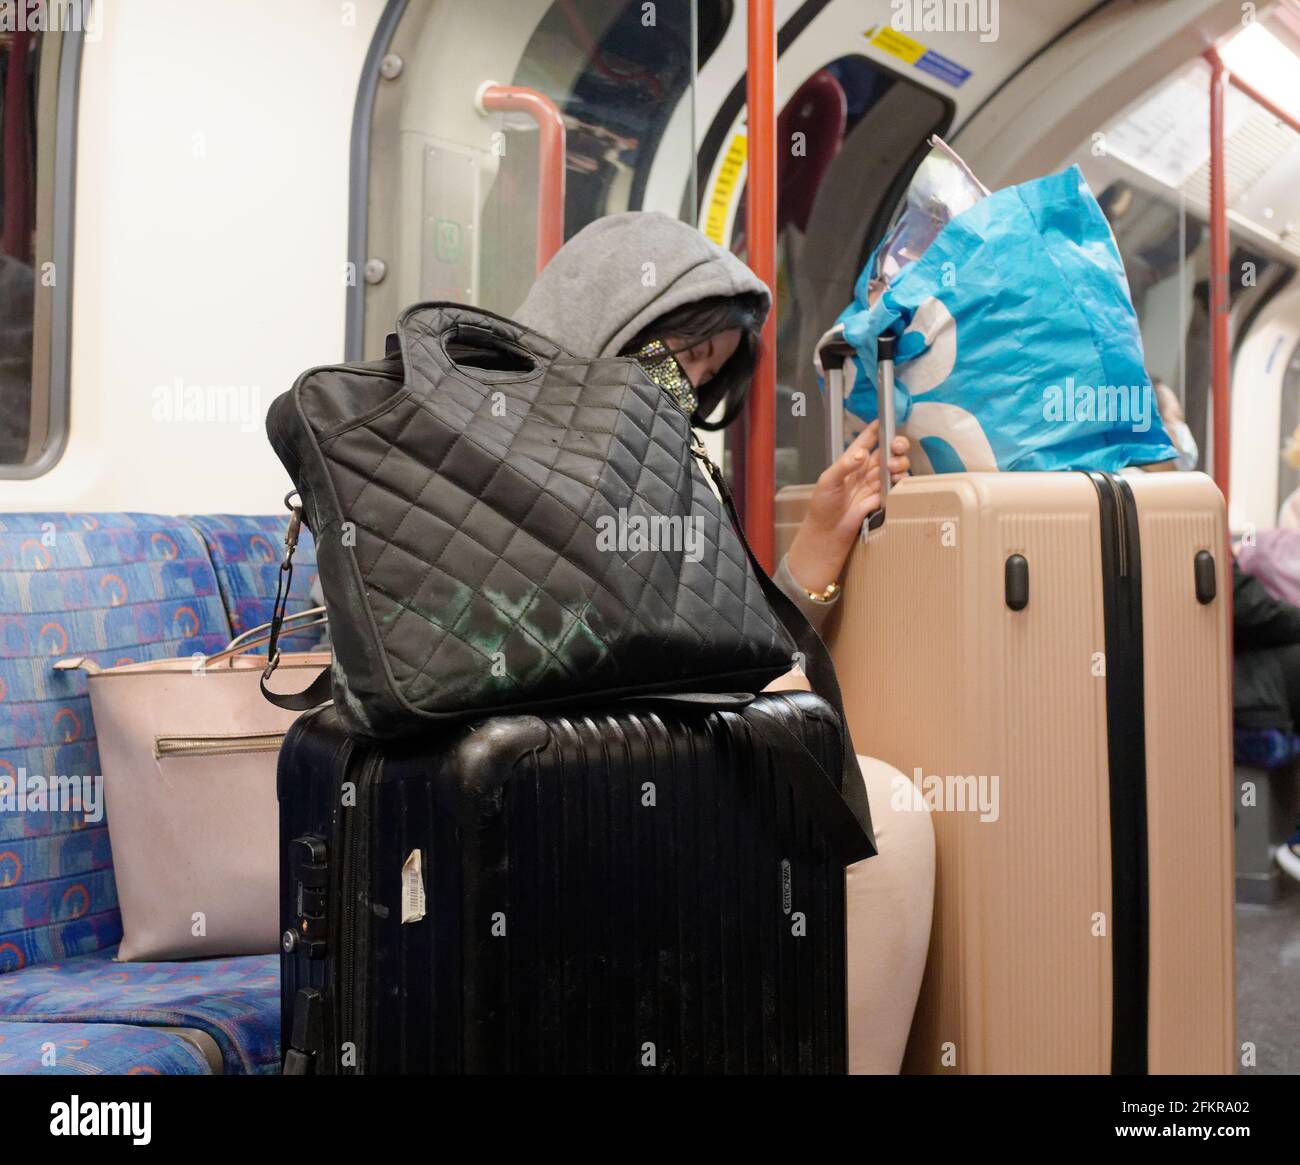 London, Greater London, England - 27 2021. April: Eine einreisende Person in der U-Bahn hält sich an ihr überflüssiges Gepäck fest. Stockfoto